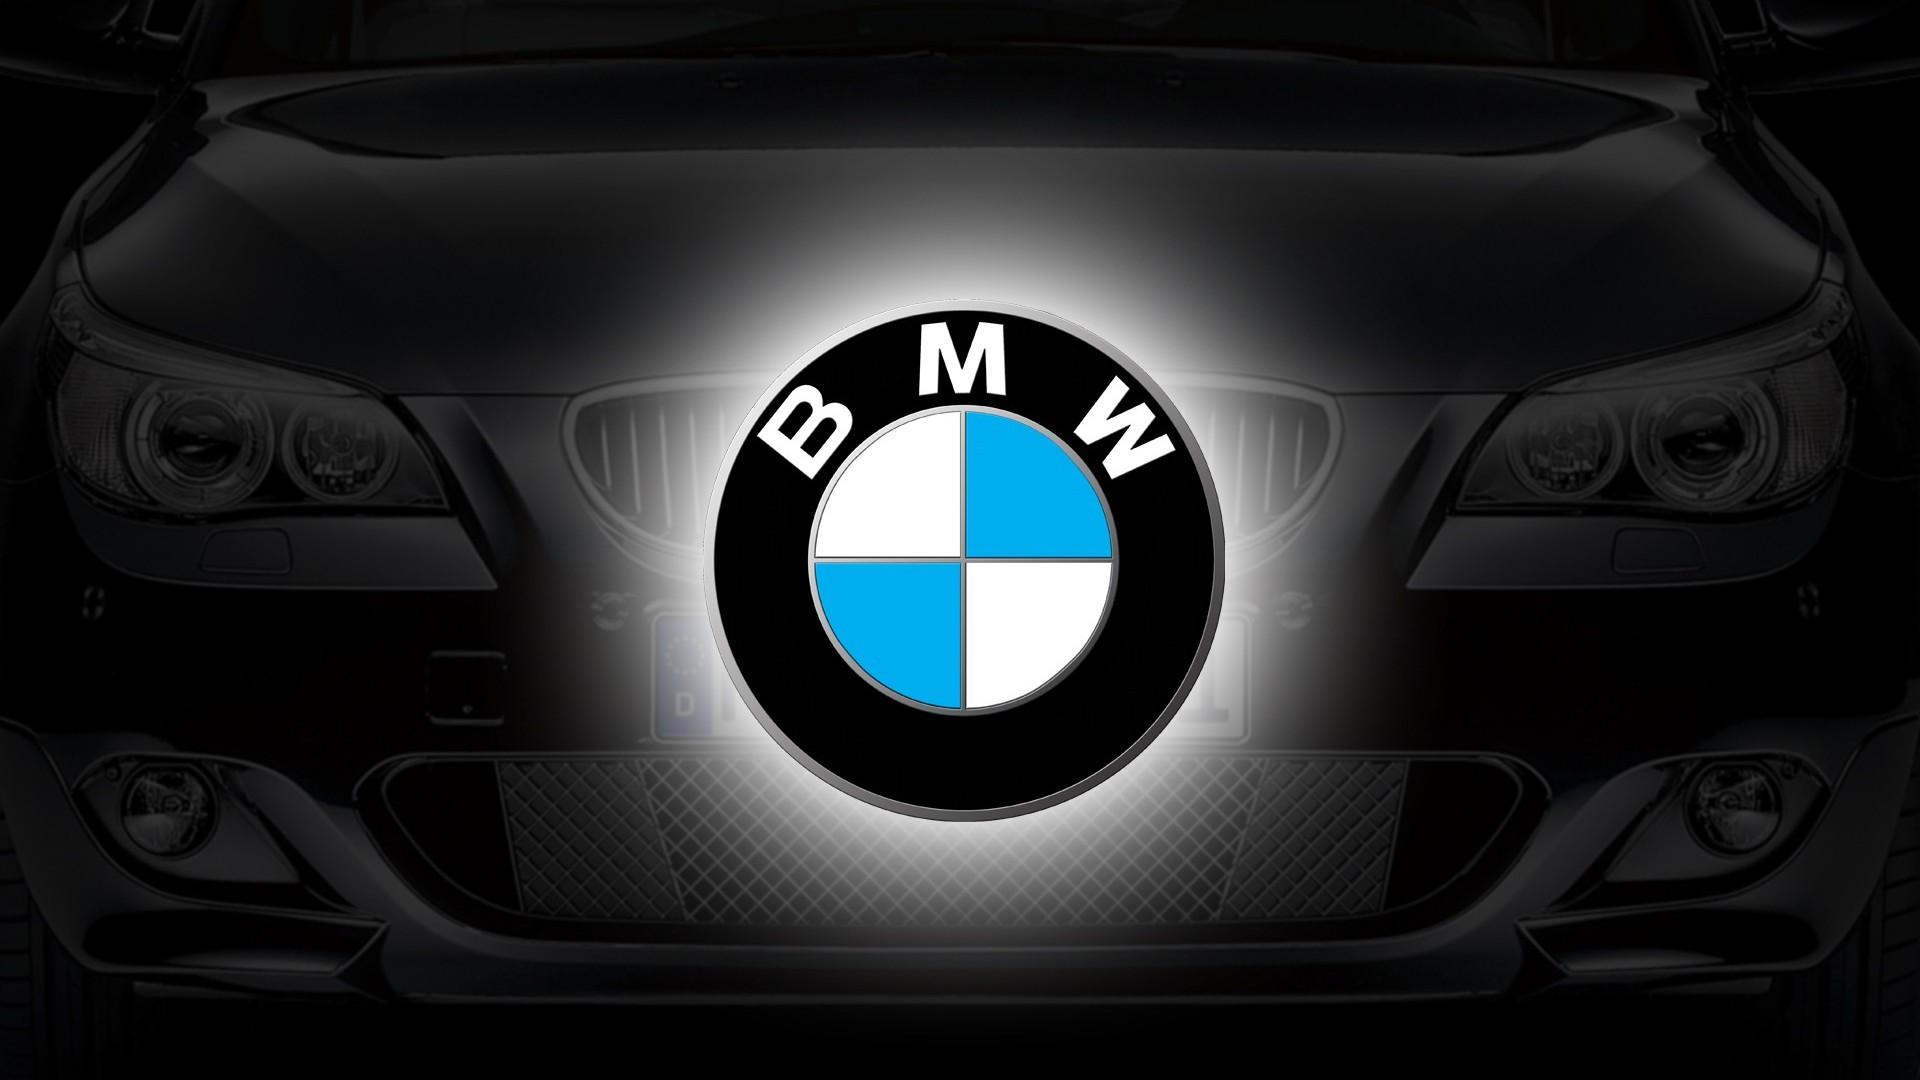 Best BMW Wallpaper For Desktop & Tablets in HD For Download